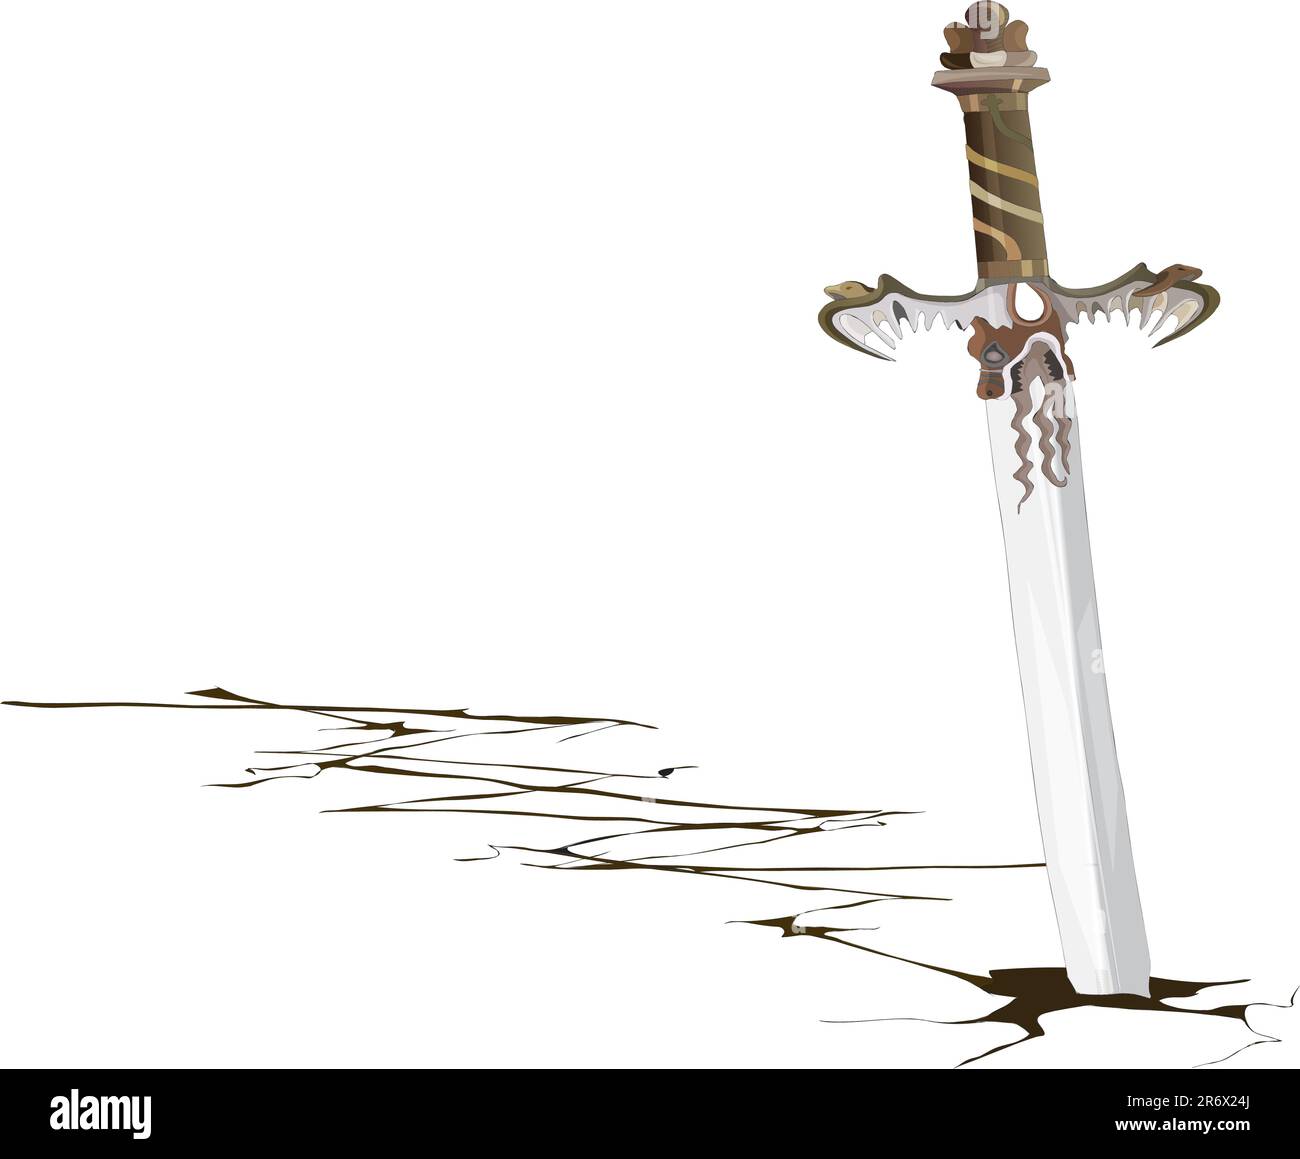 La espada dejada en el suelo formó una grieta en él Ilustración del Vector